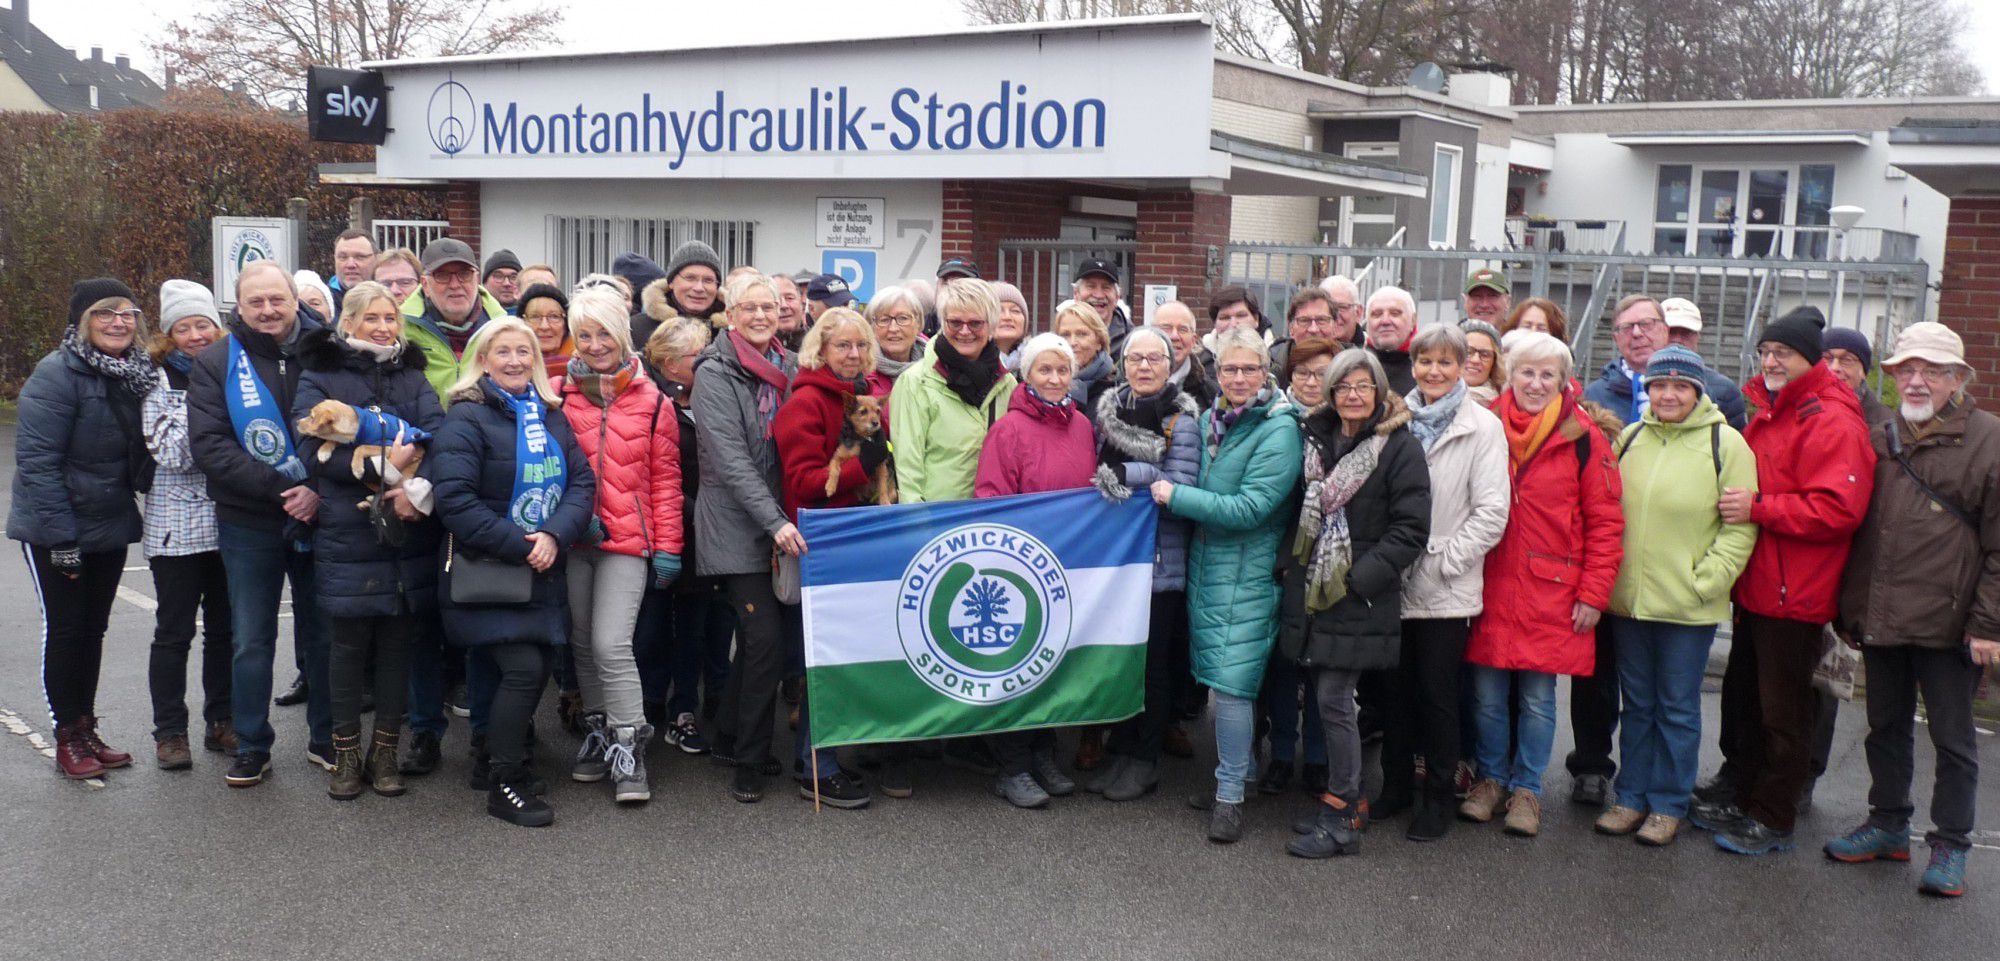 Die traditionelle Silvester-Wanderung des HSC war auch zu diesem Jahreswechsel wieder sehr beliebt: Vor dem Abmarsch am Montanhydraulik-Stadion stellten sich die Teilnehmer zum Gruppenfoto. (Foto: privat)